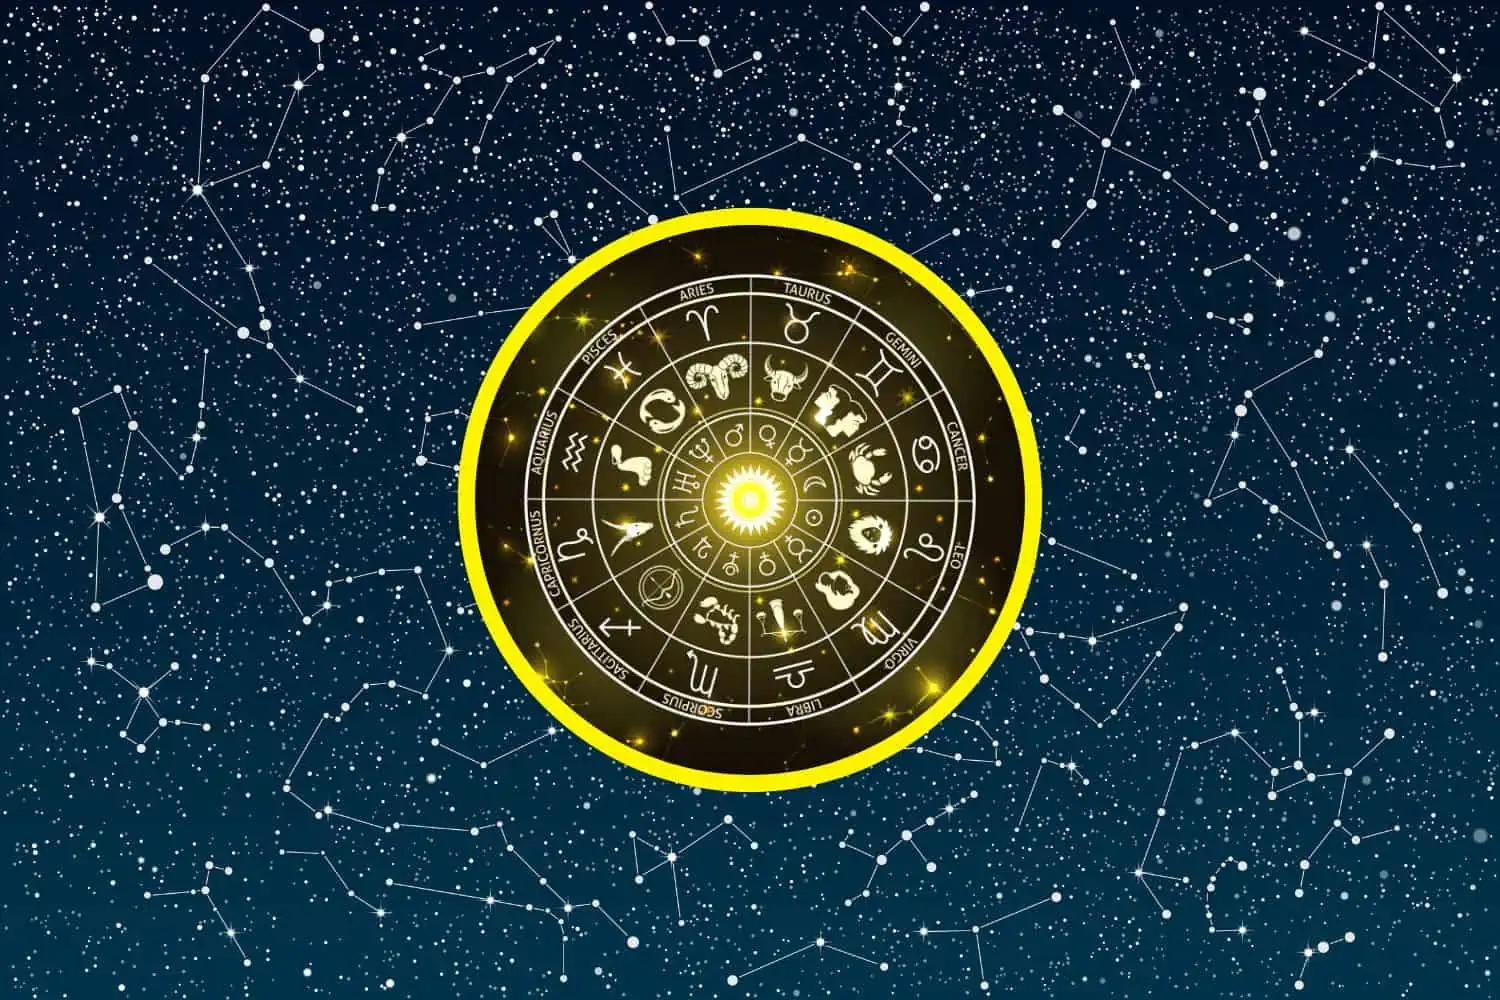 Today’s Free Horoscopes Wednesday 1 February 2023